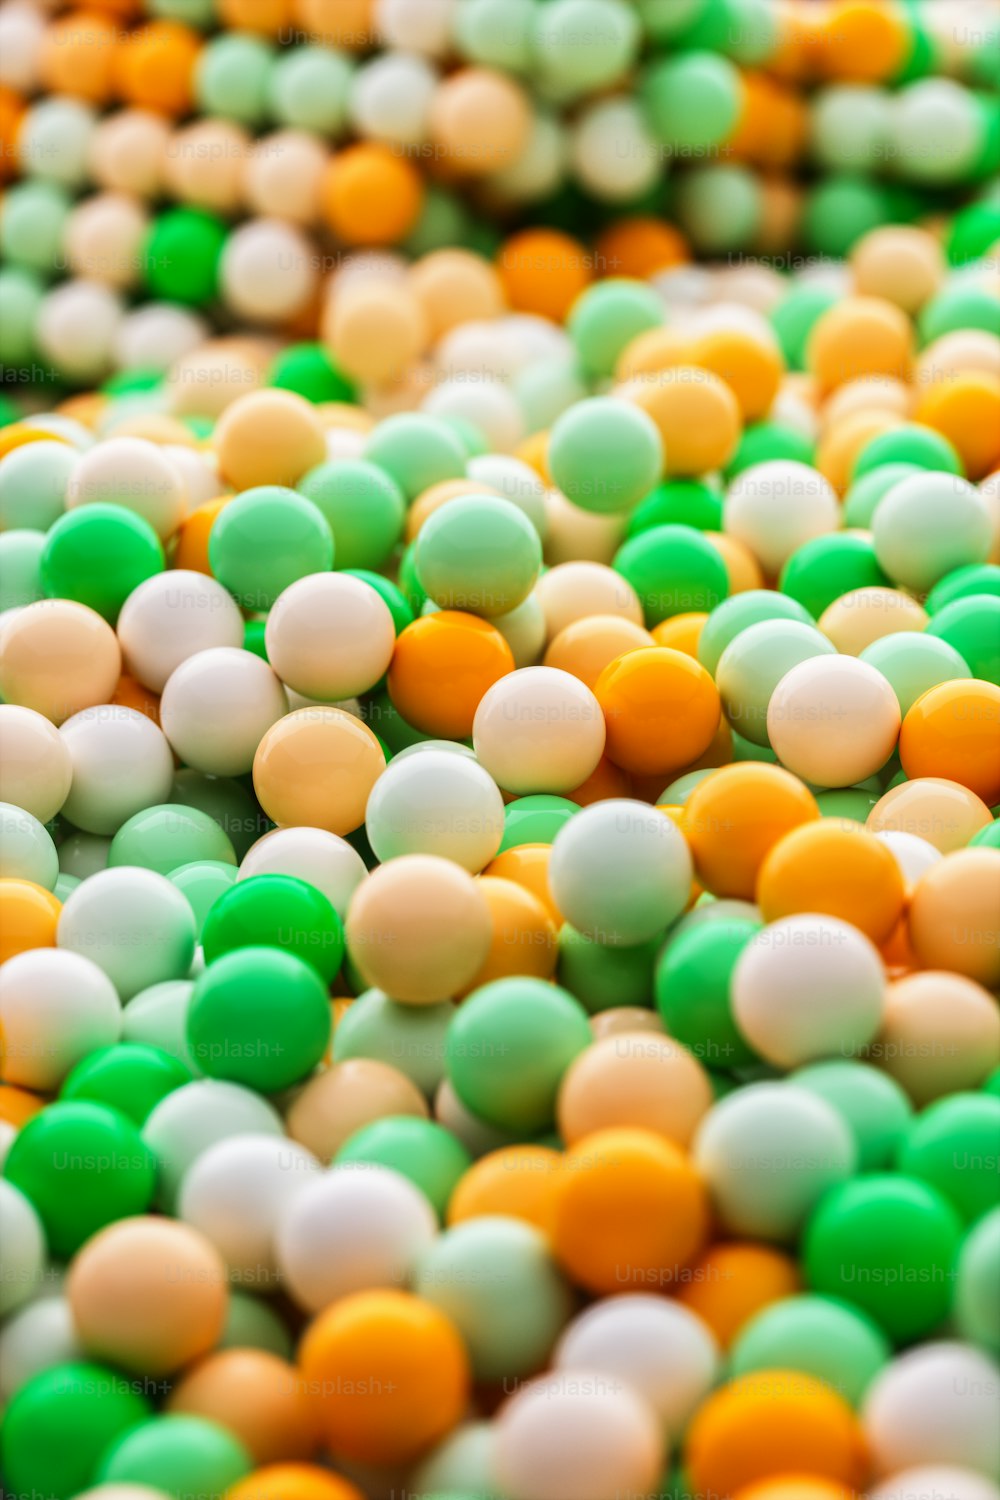 Un primer plano de un montón de bolas verdes y blancas